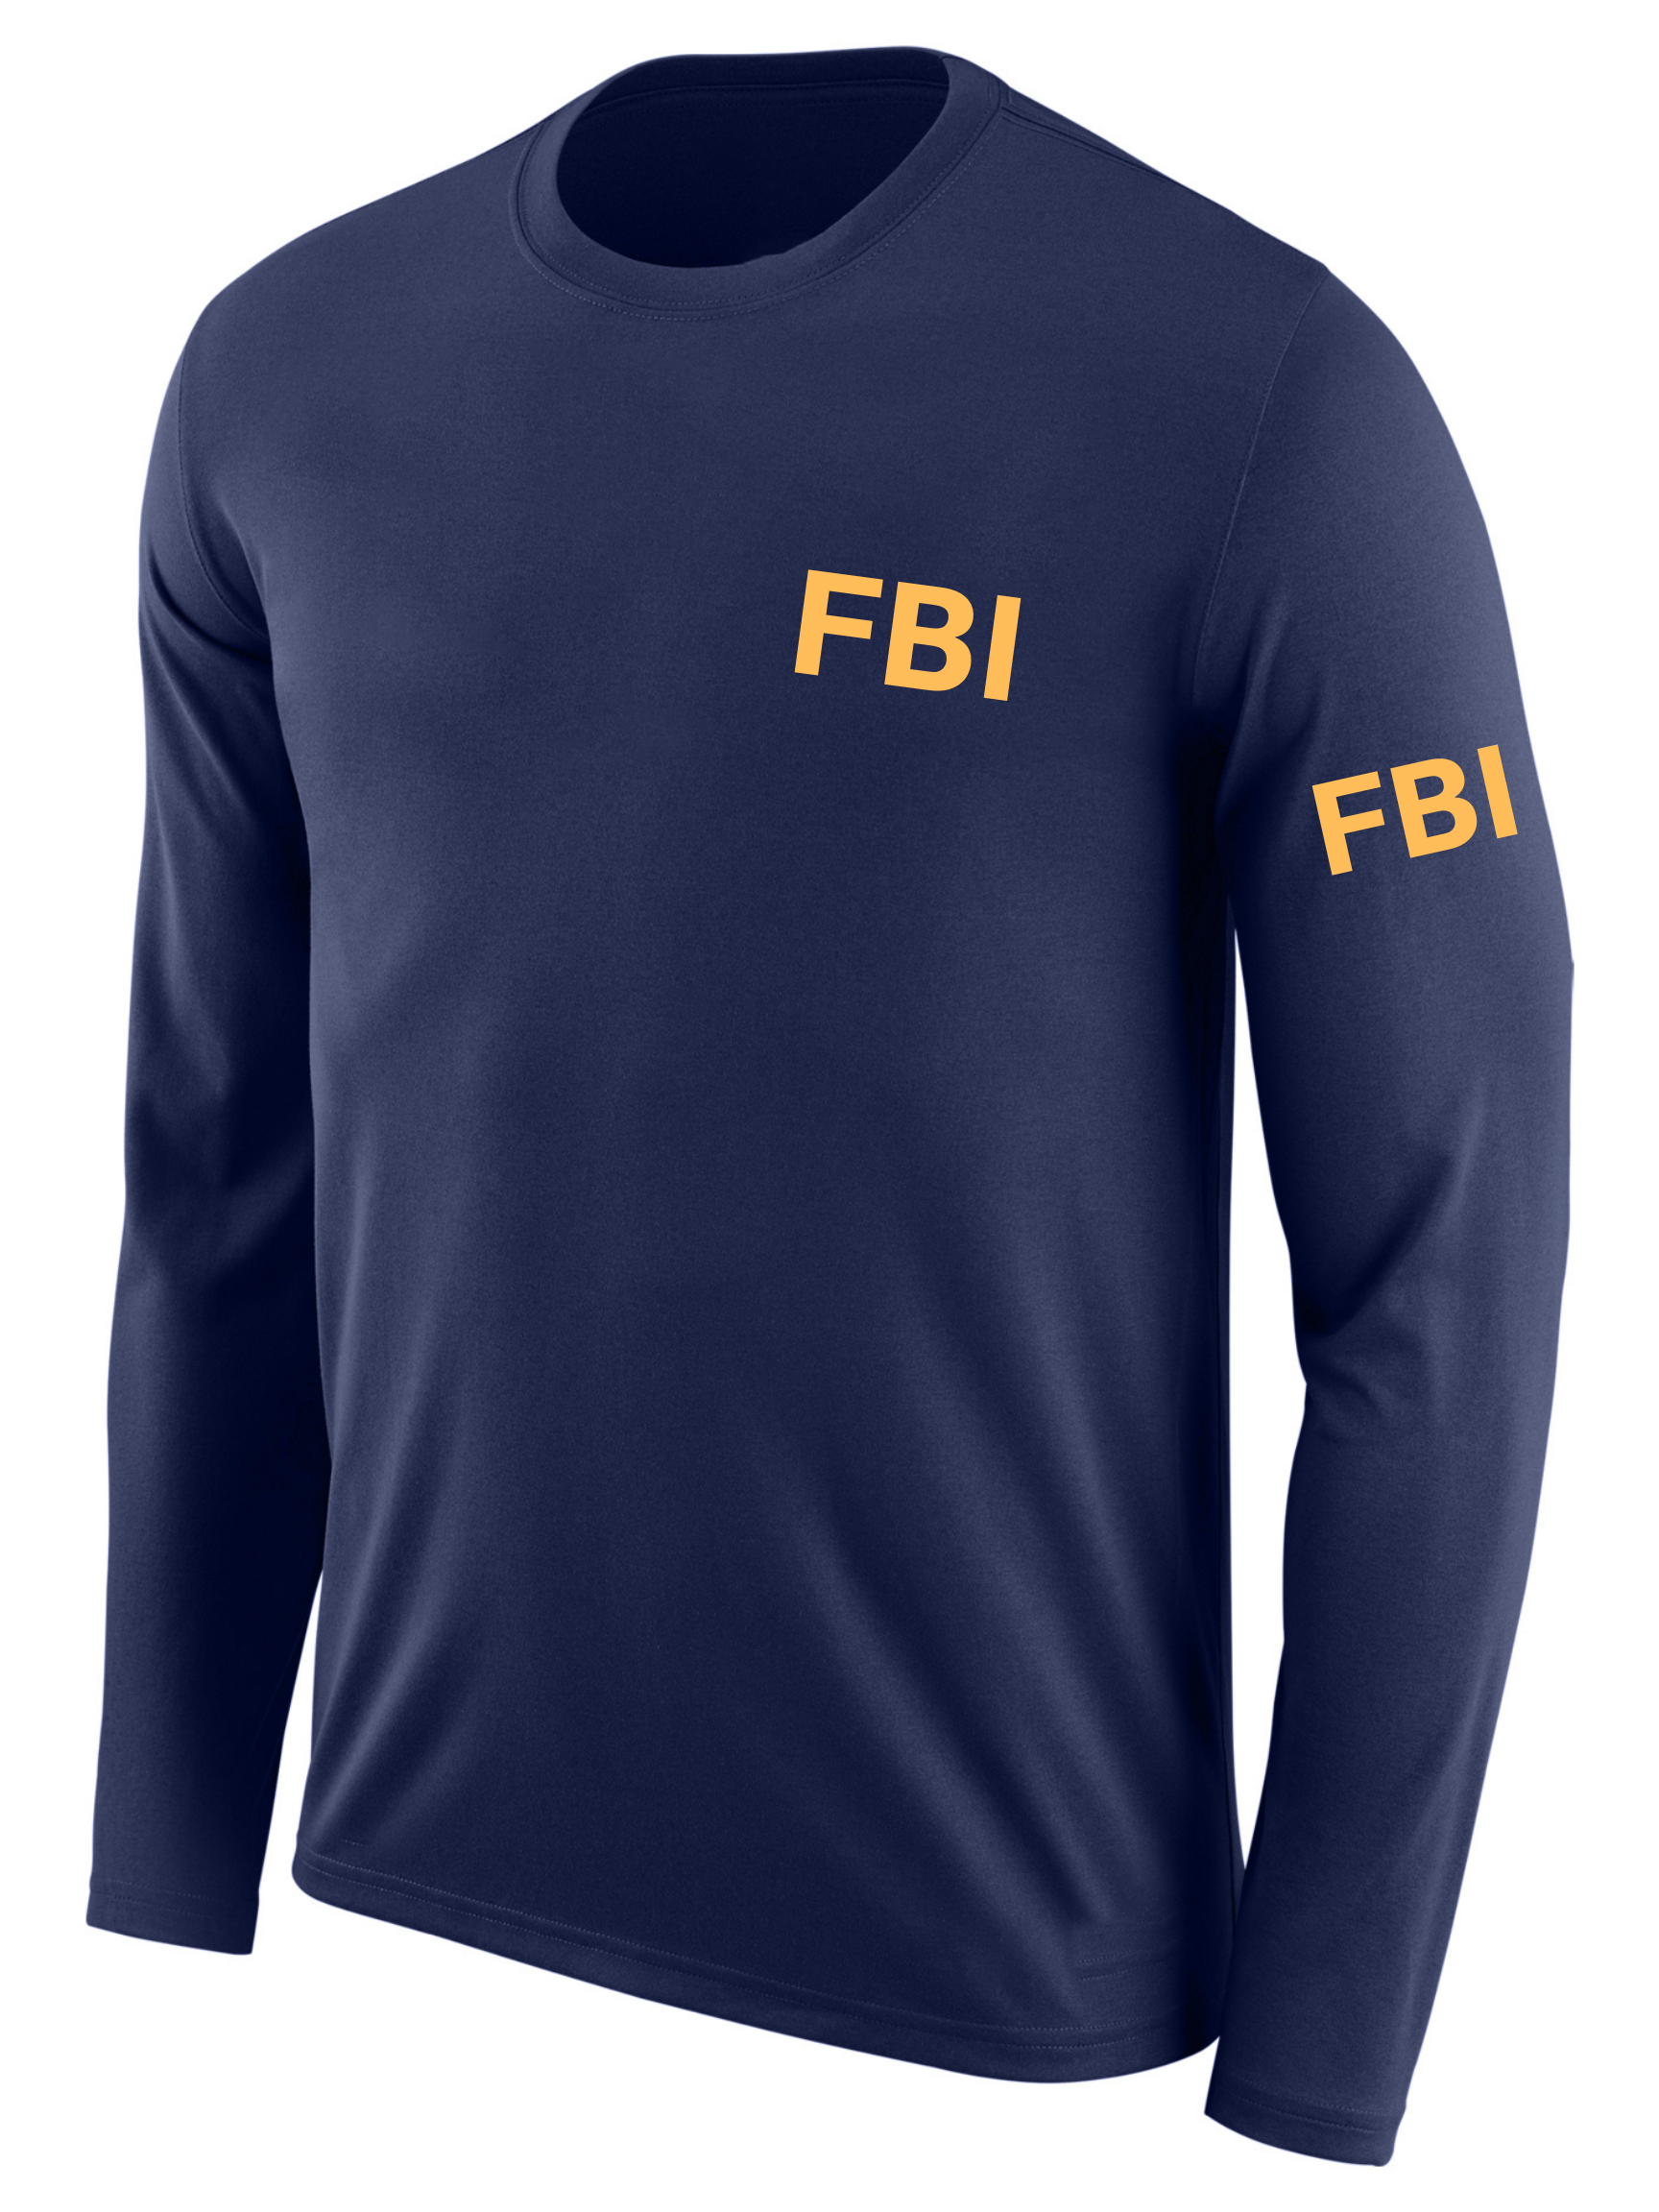 Feds Apparel FBI Violent Gang Task Force Agency Identifier T Shirt - Long Sleeve 2XL +$2.00 / Men